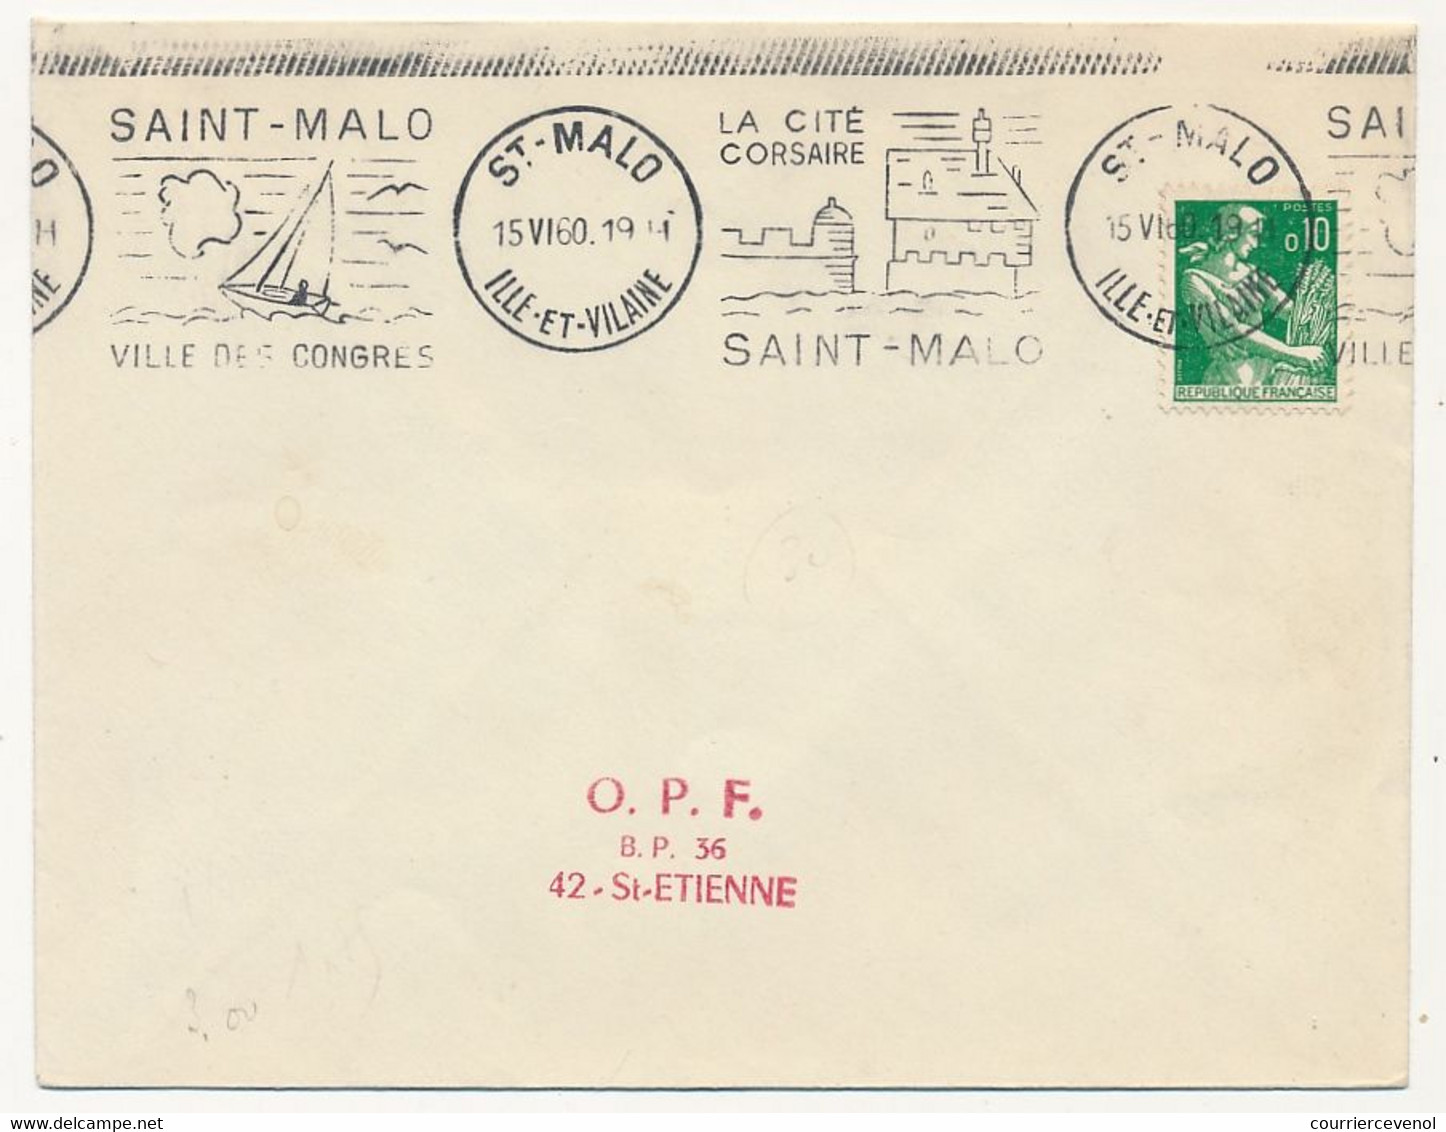 FRANCE - OMEC " Saint Malo Ville des Congrès - Saint Malo La Cité Corsaire" - 1960 s/0,10 Moisonneuse